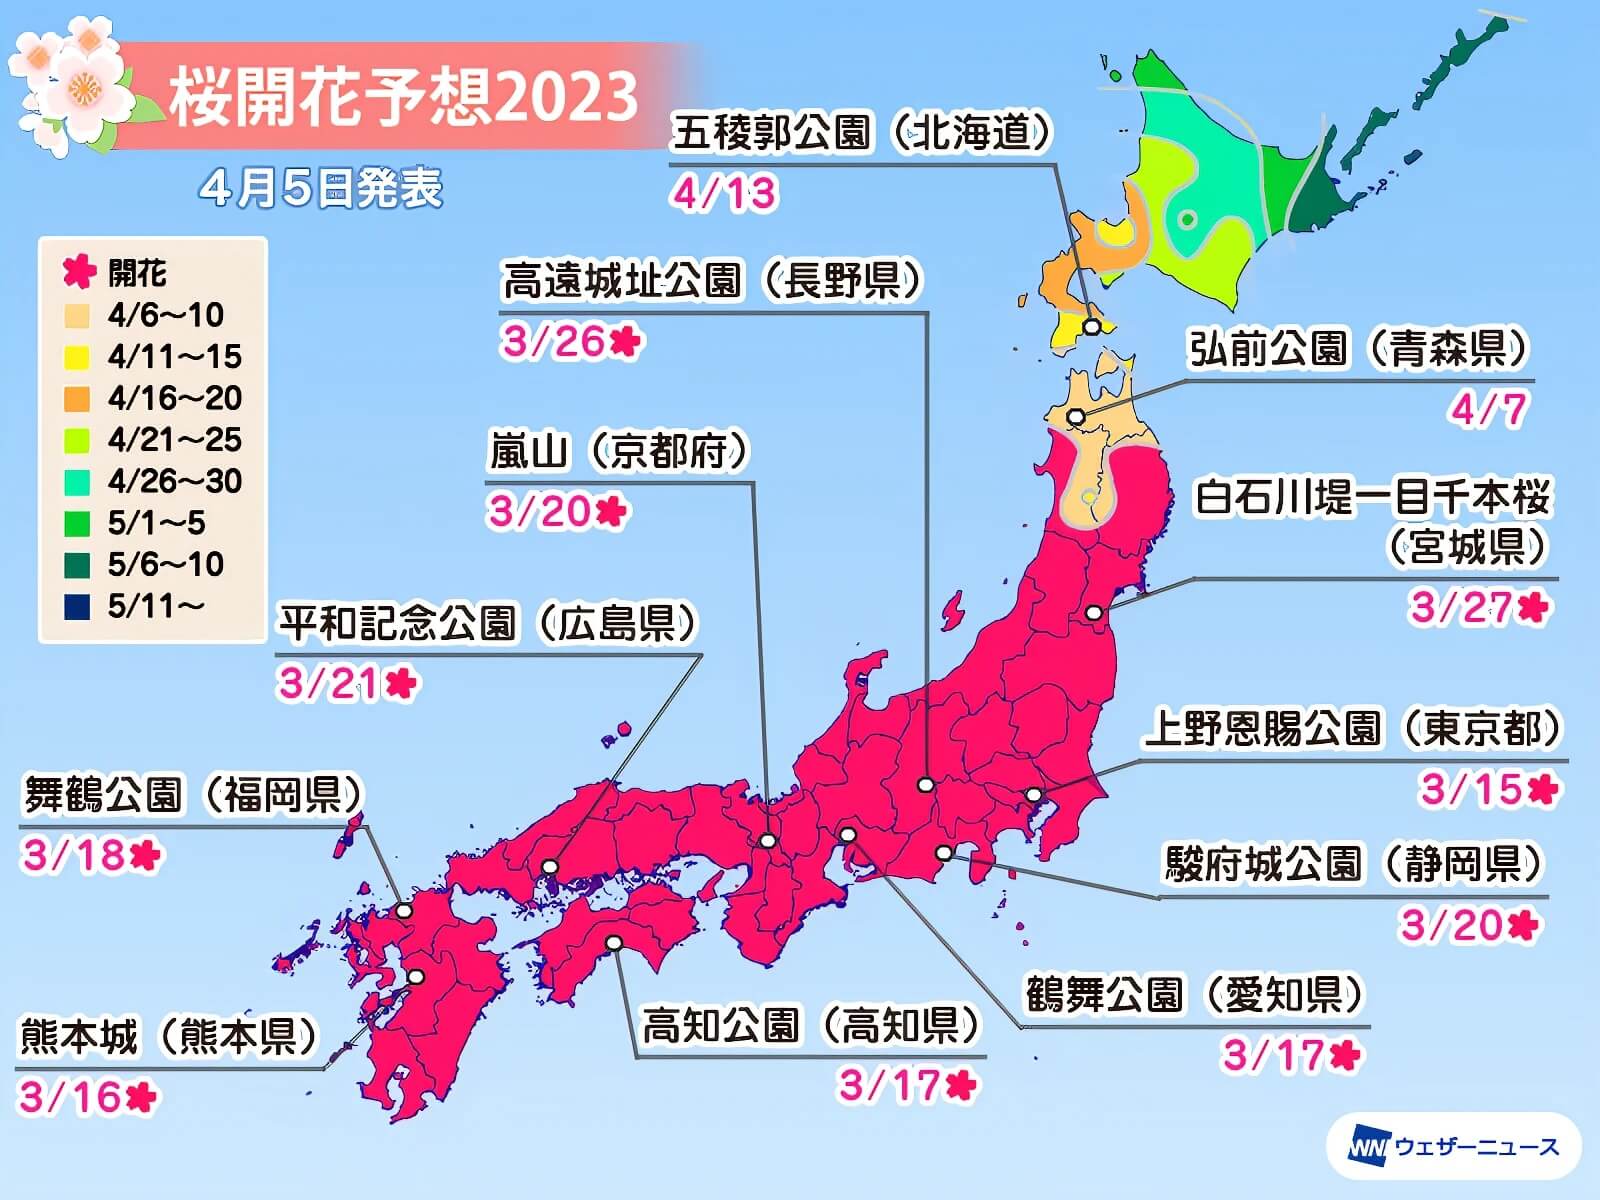 日本櫻花預測2023 最新櫻花開花前線賞櫻名所景點整理 3